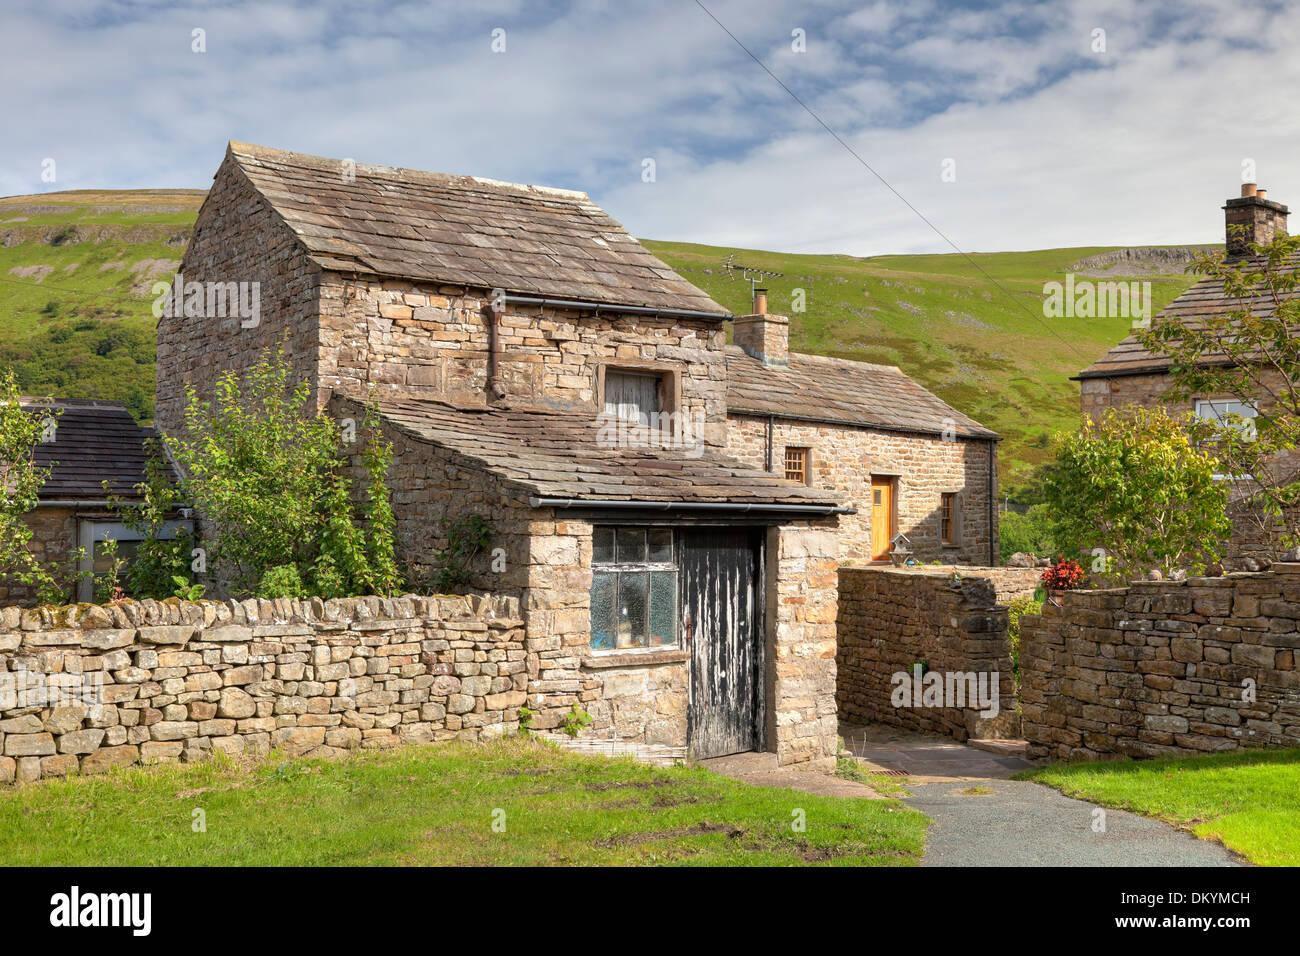 Stein-Bauernhaus mit Scheune in den Yorkshire Dales Dorf Muker, Swaledale, England. Stockfoto